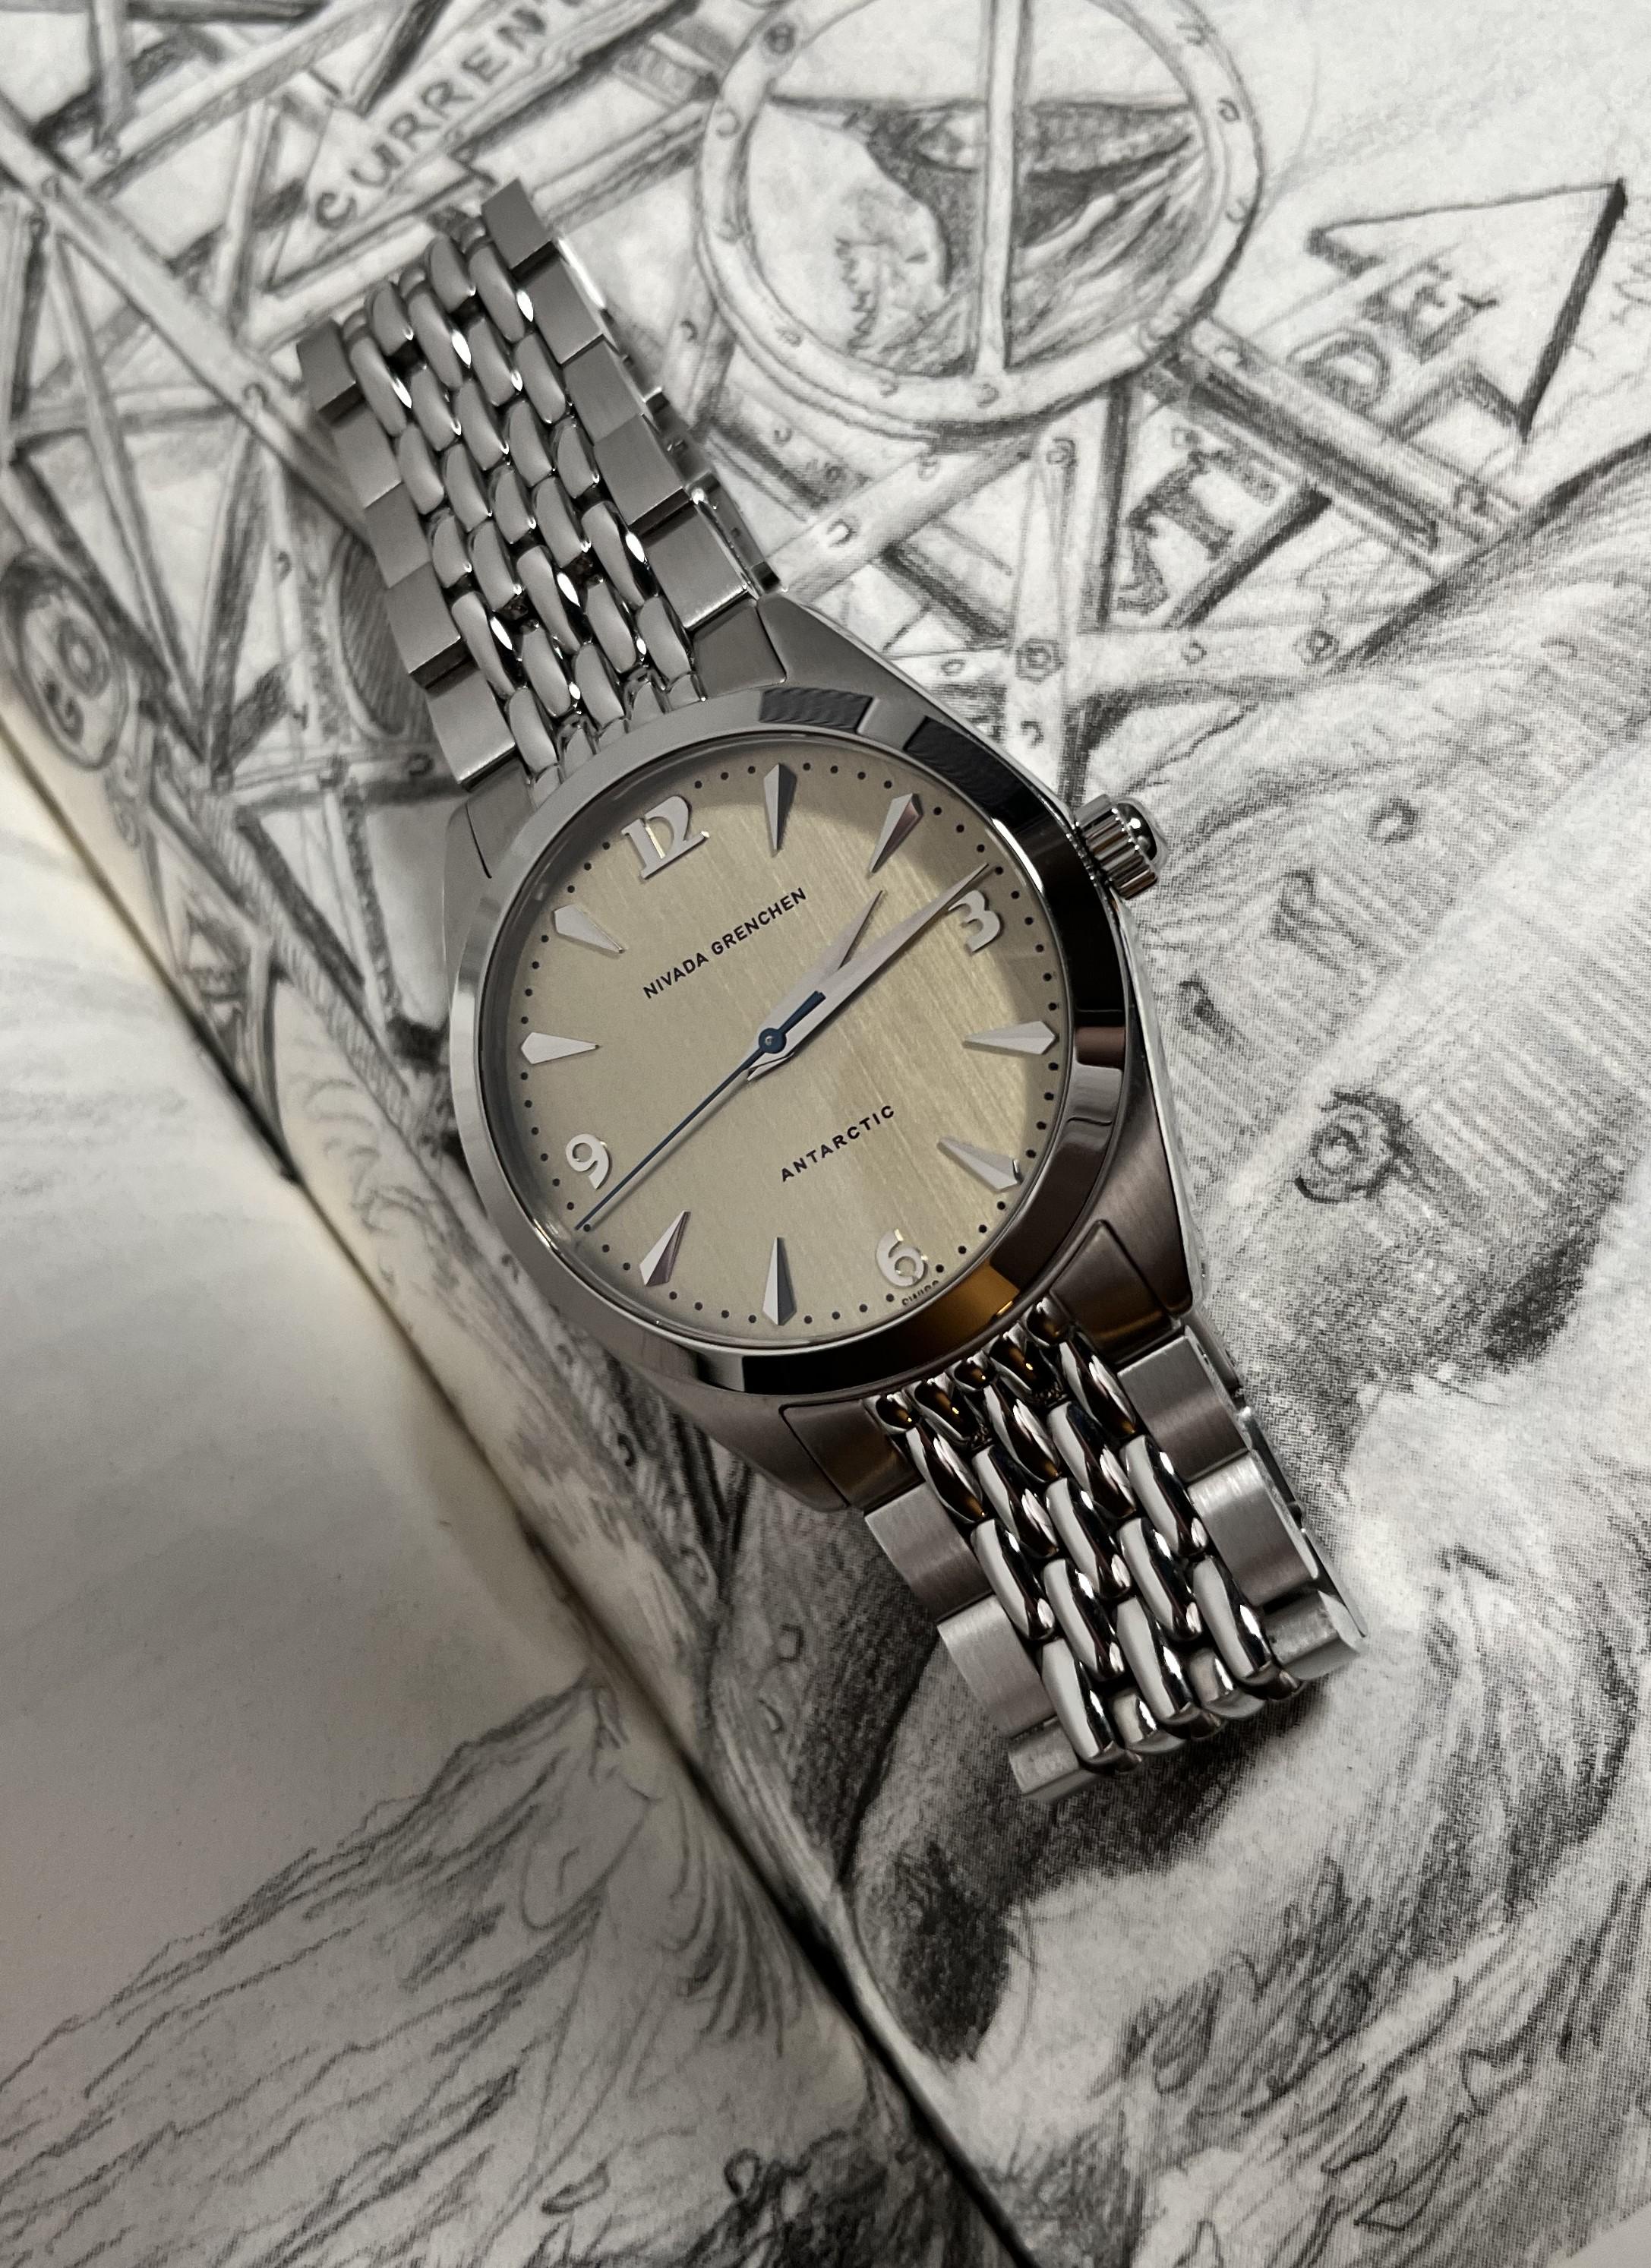 Mens Vintage Soviet Watch ANTARCTICA. Watches for Men Gift - Etsy | Watches  for men, Vintage watches, Timex watches